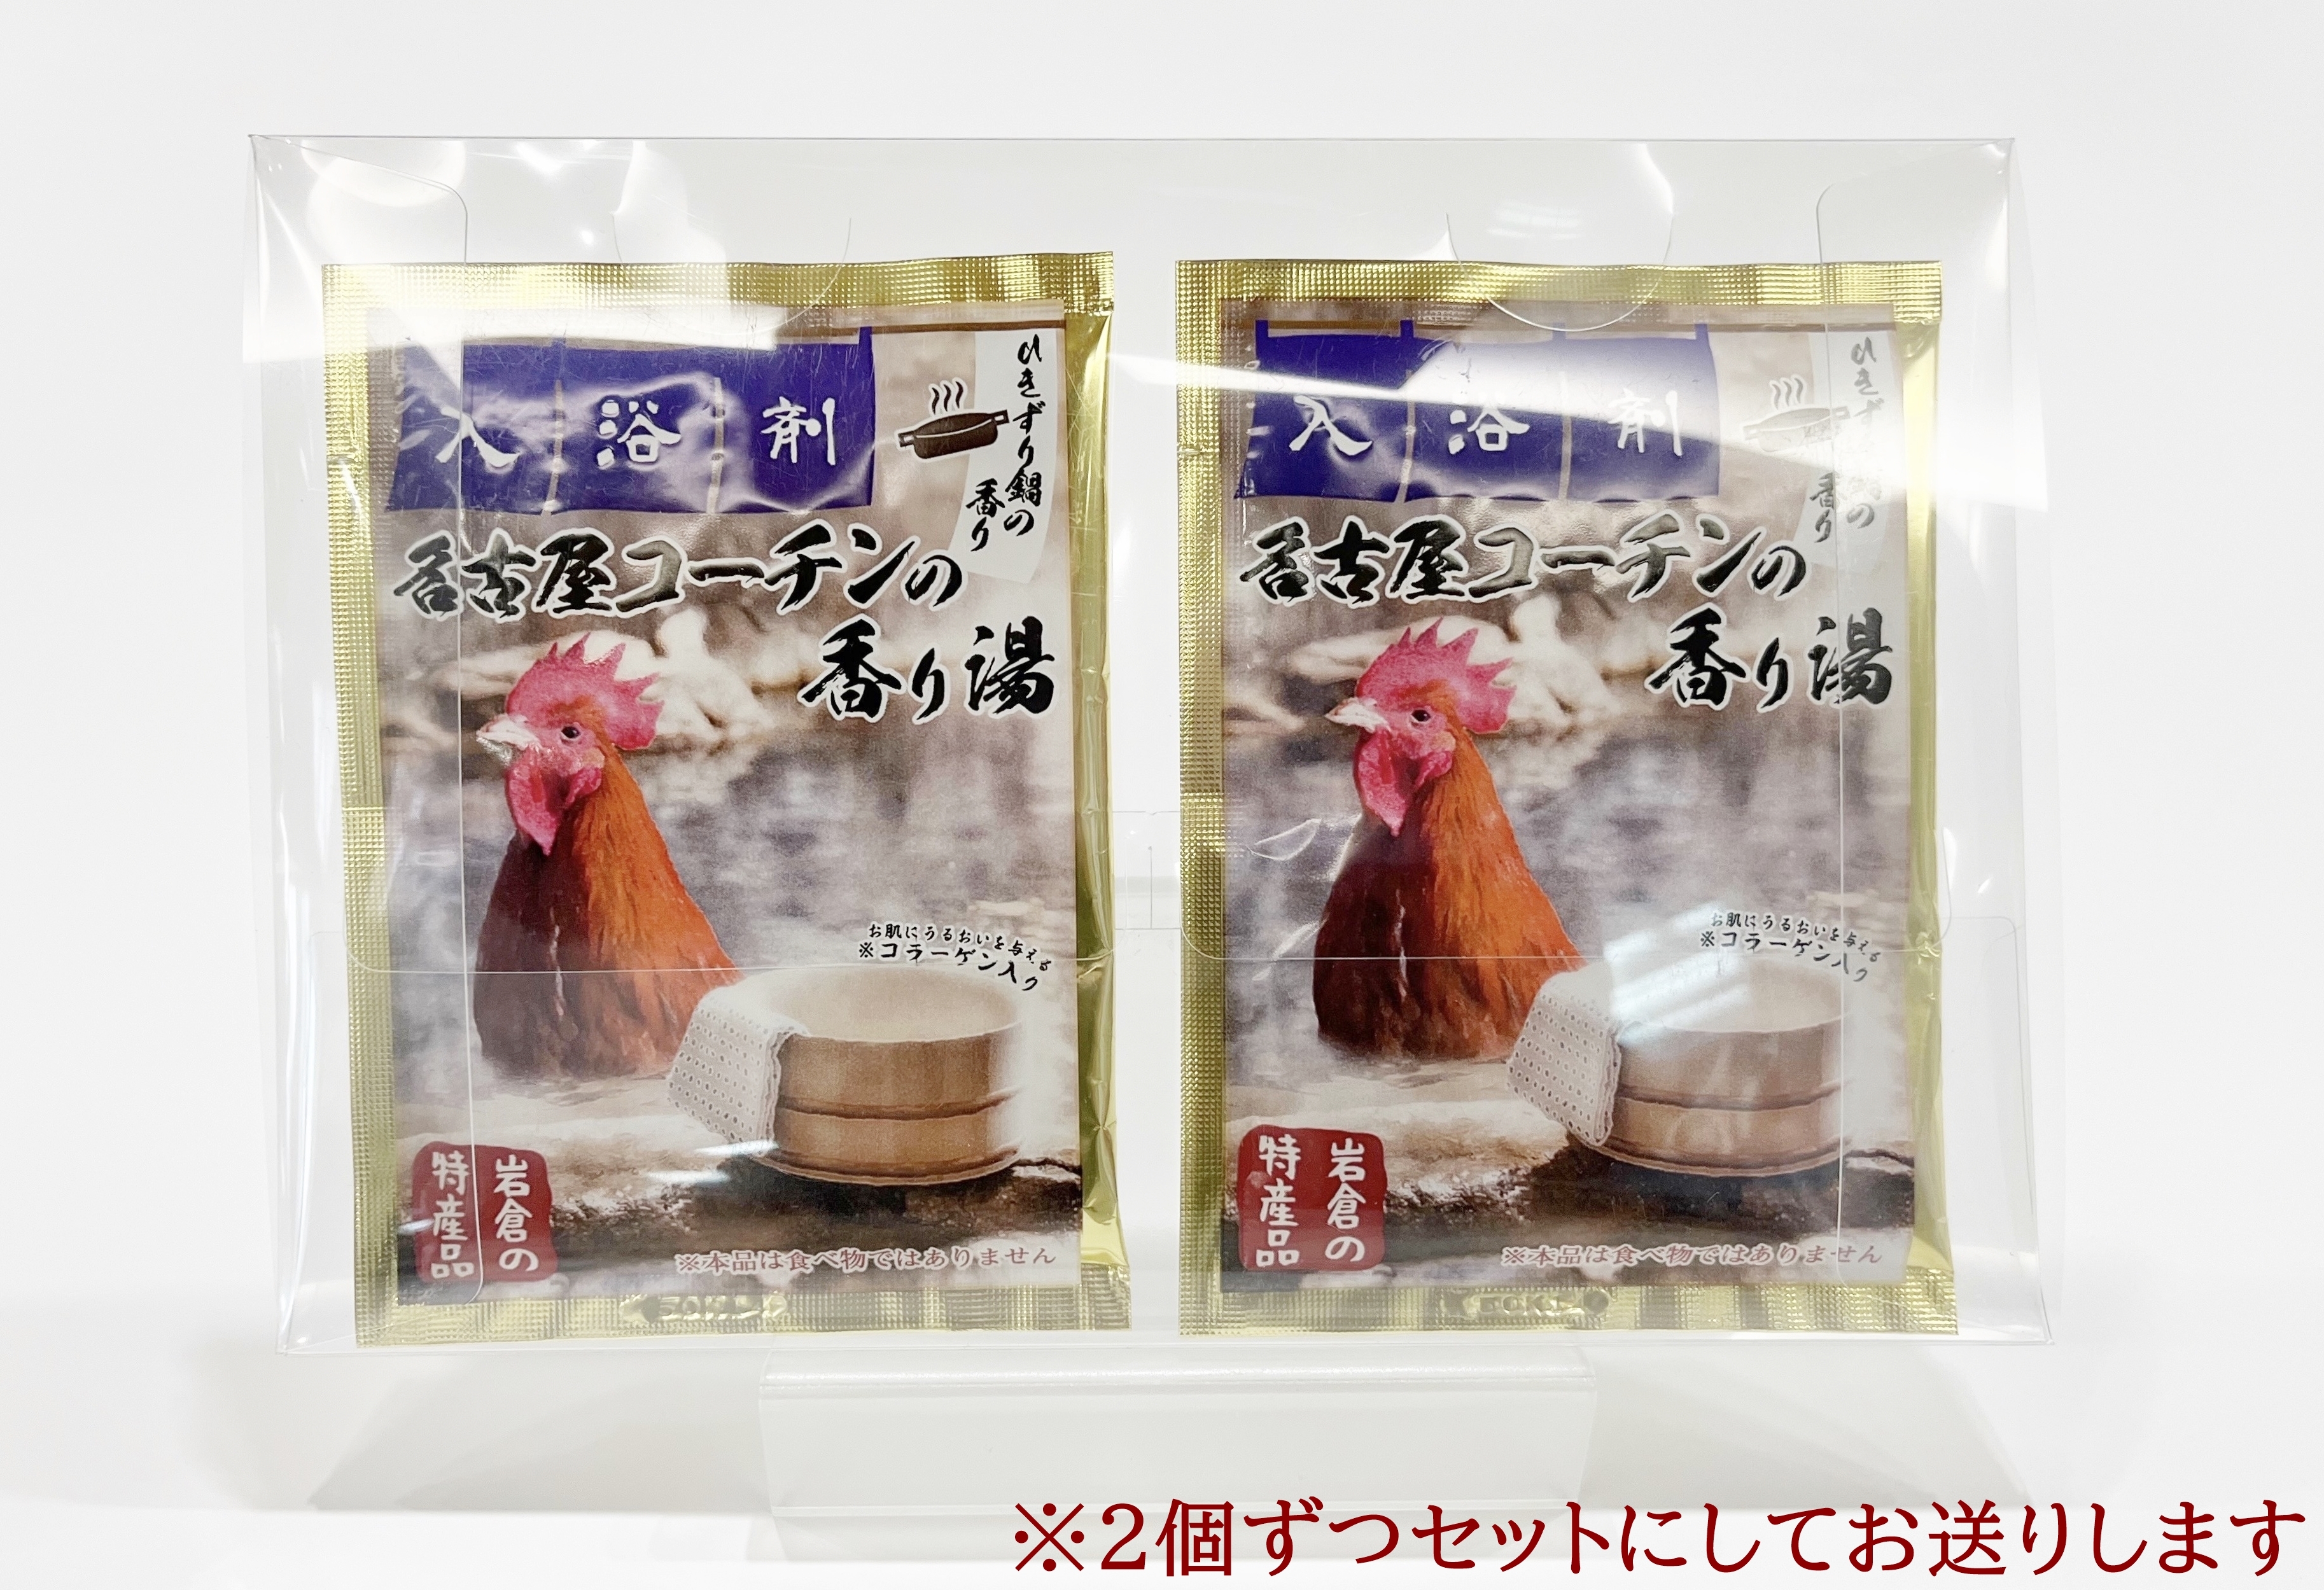 いわくら入浴剤「名古屋コーチンの香り湯」10個パック